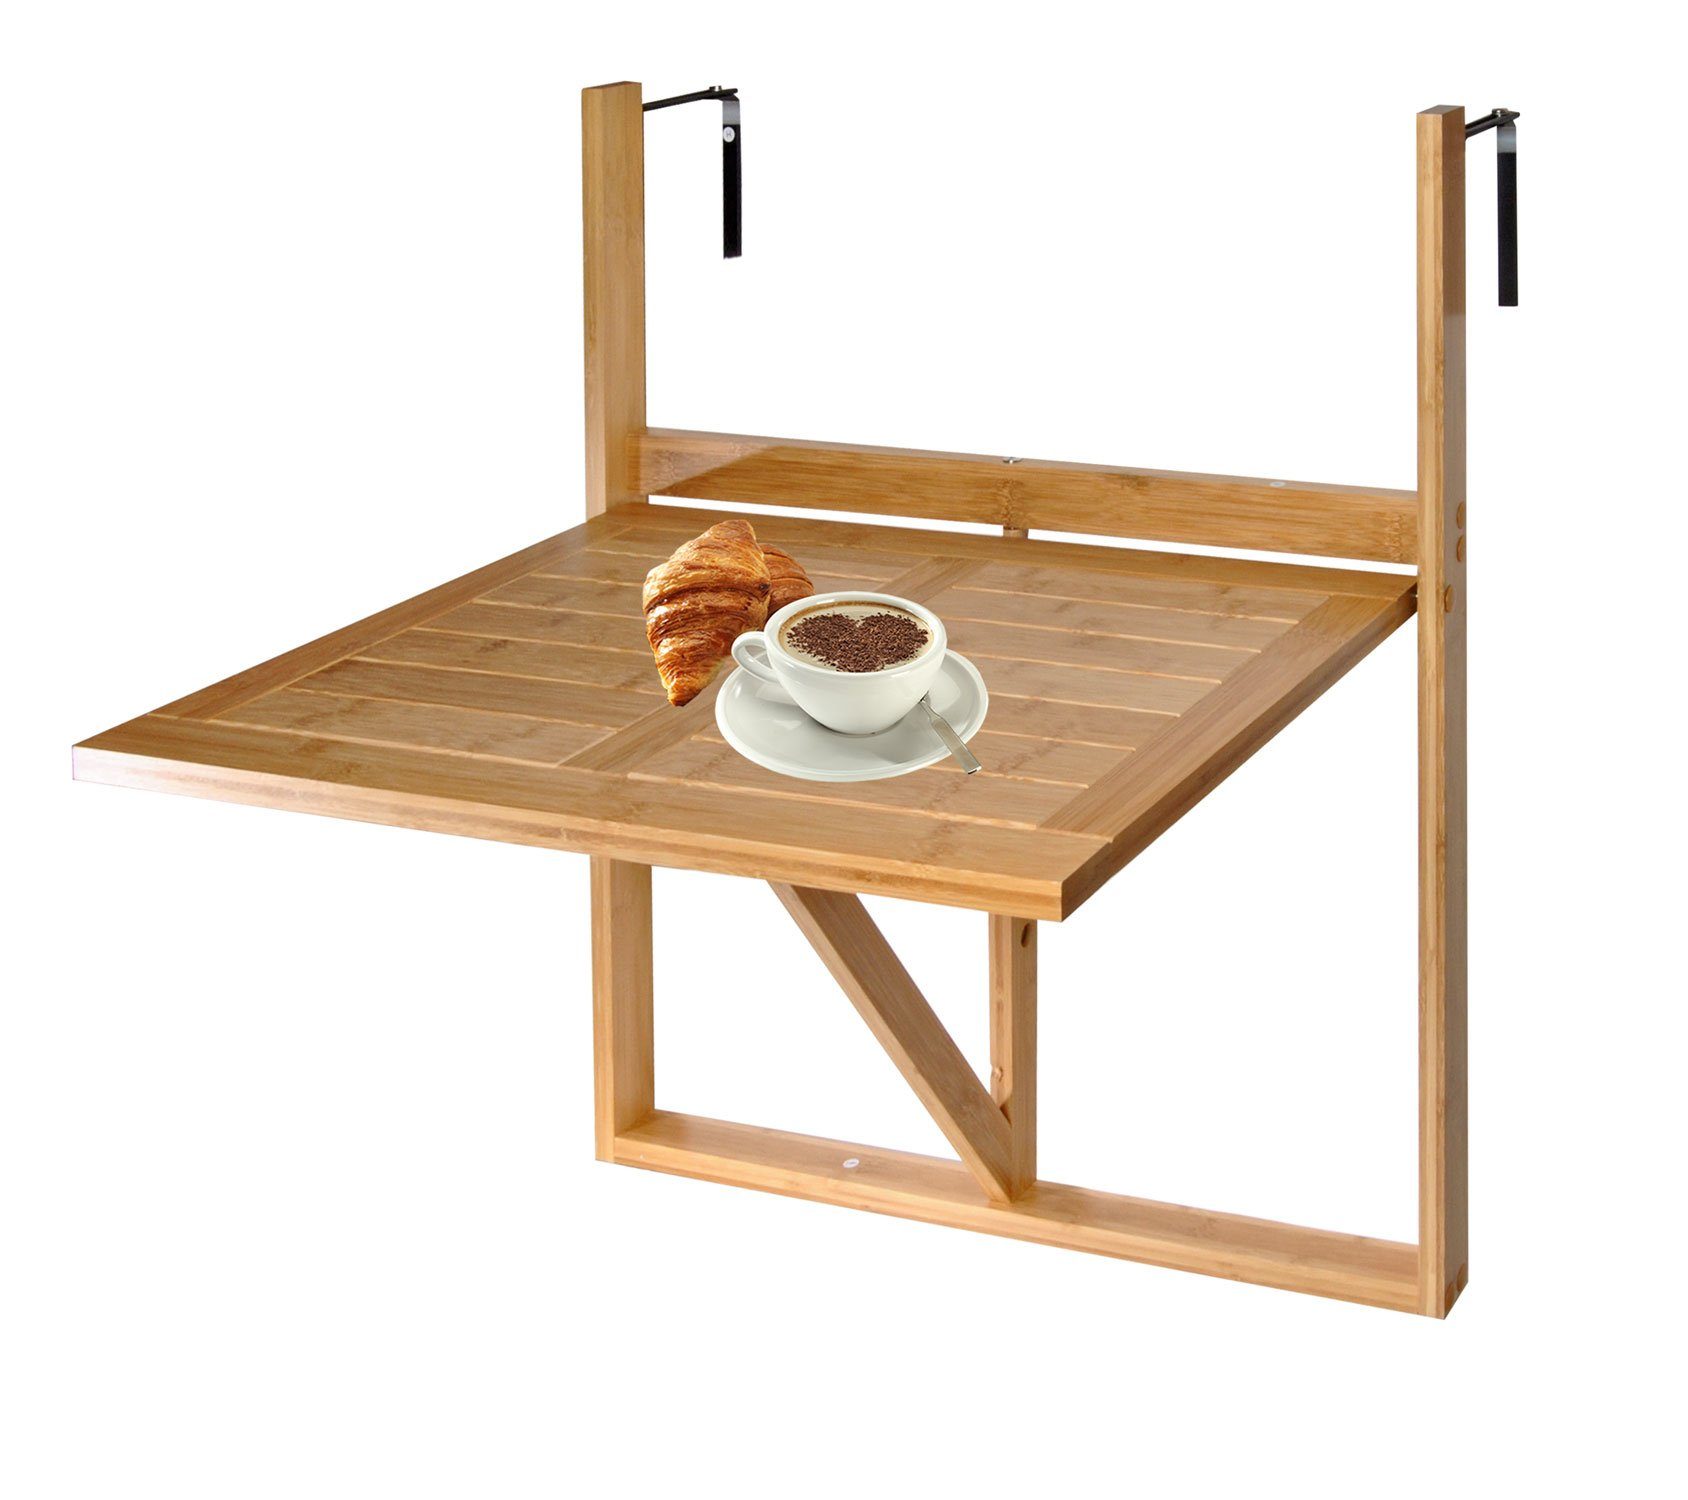 KESPER for kitchen & home Balkonhängetisch Balkon-Hängetisch Holz  Balkontisch Balkonhängetisch Klapptisch Tisch, Für Geländebreite max 9cm